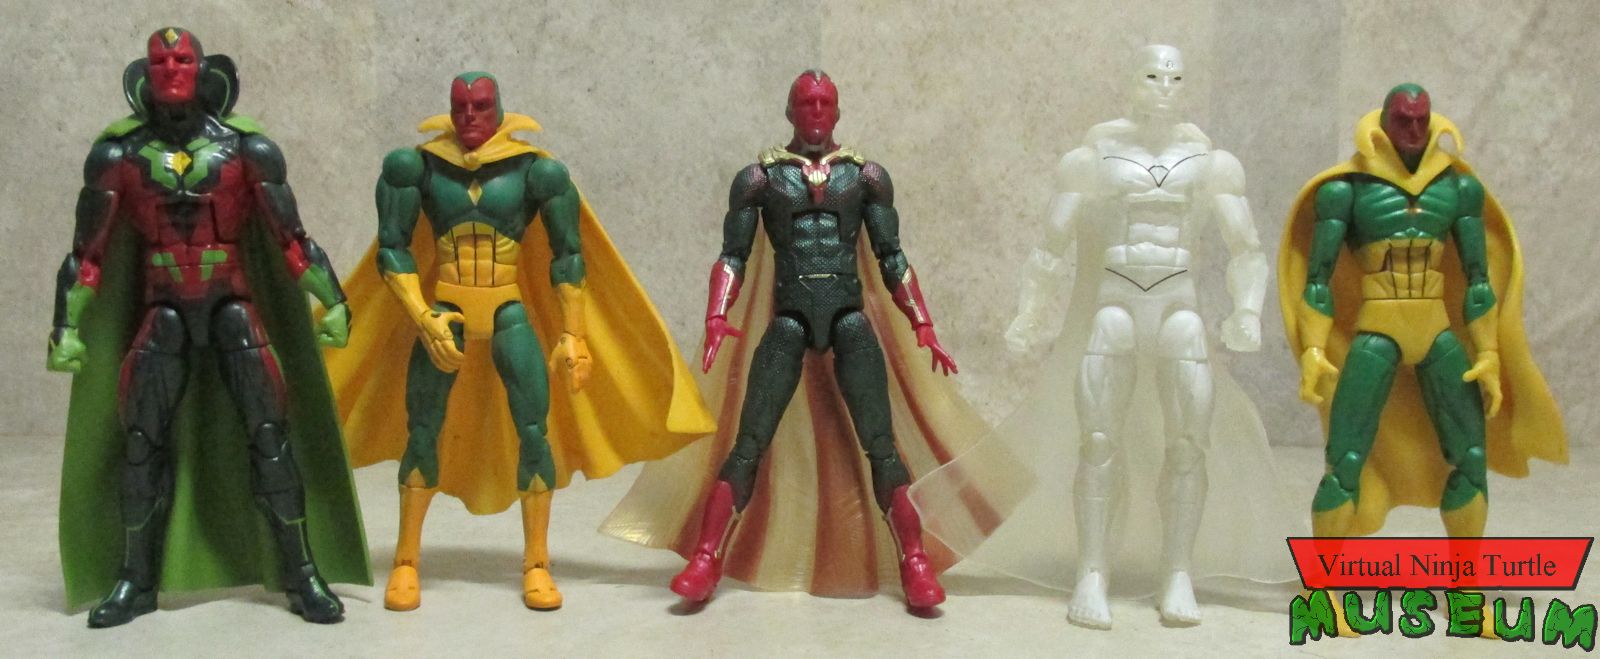 Marvel Legends Vision figures